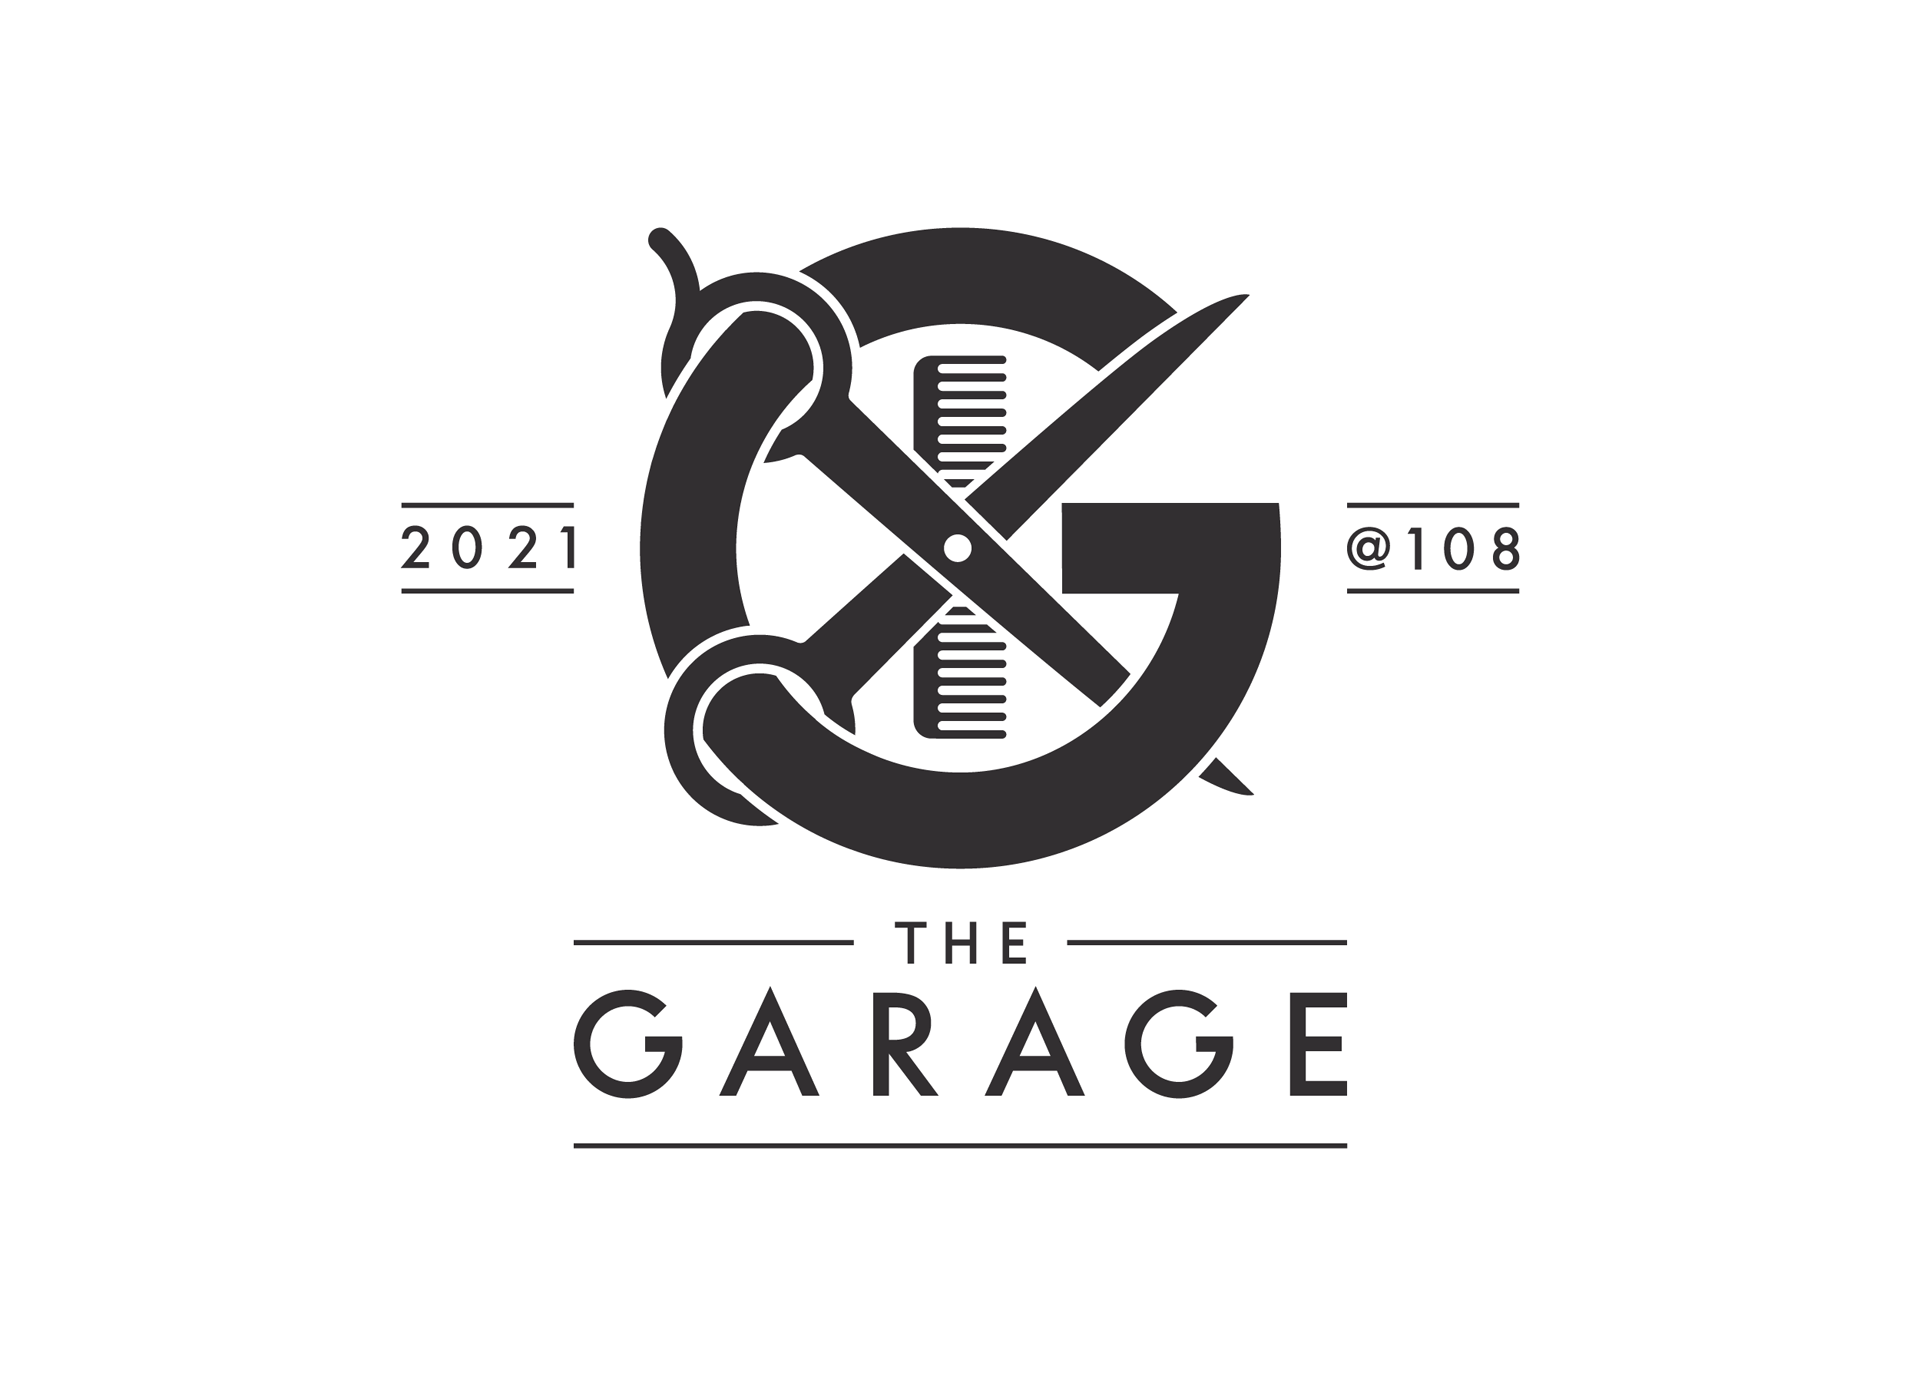 The Garage brand design